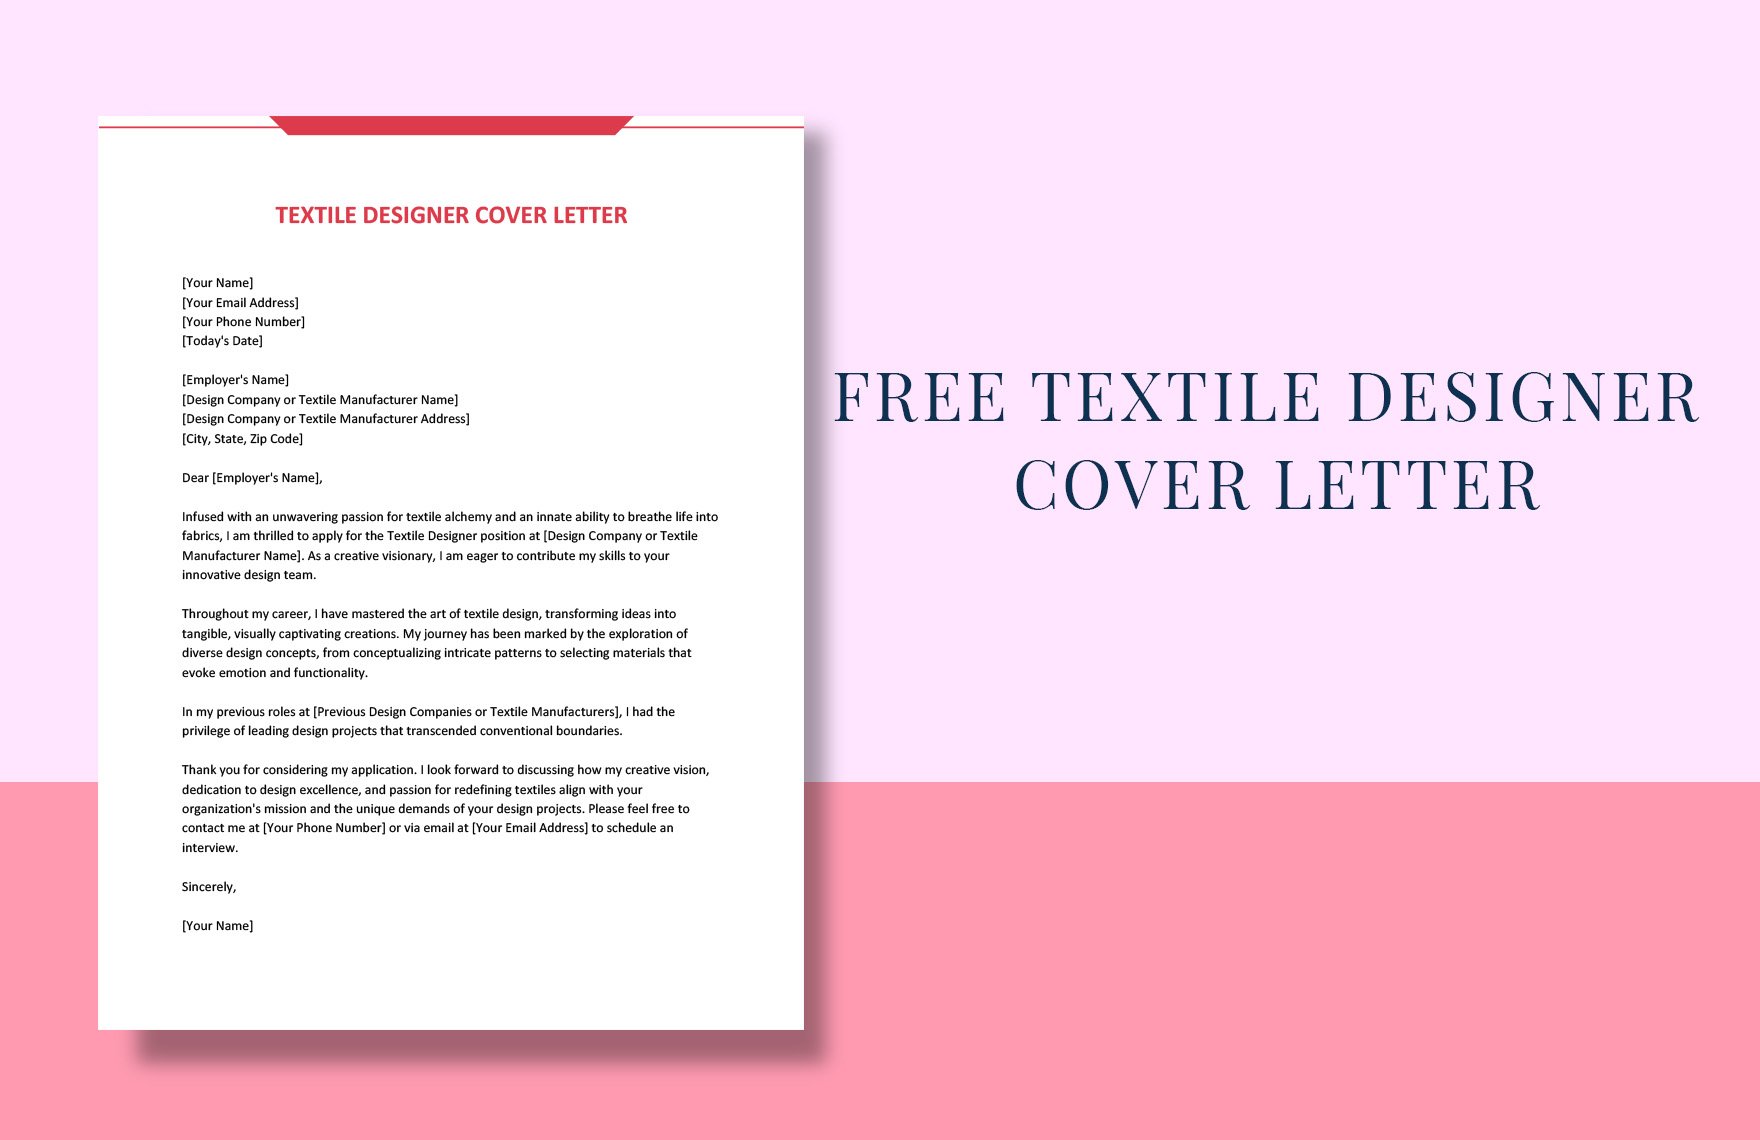 Textile Designer Cover Letter